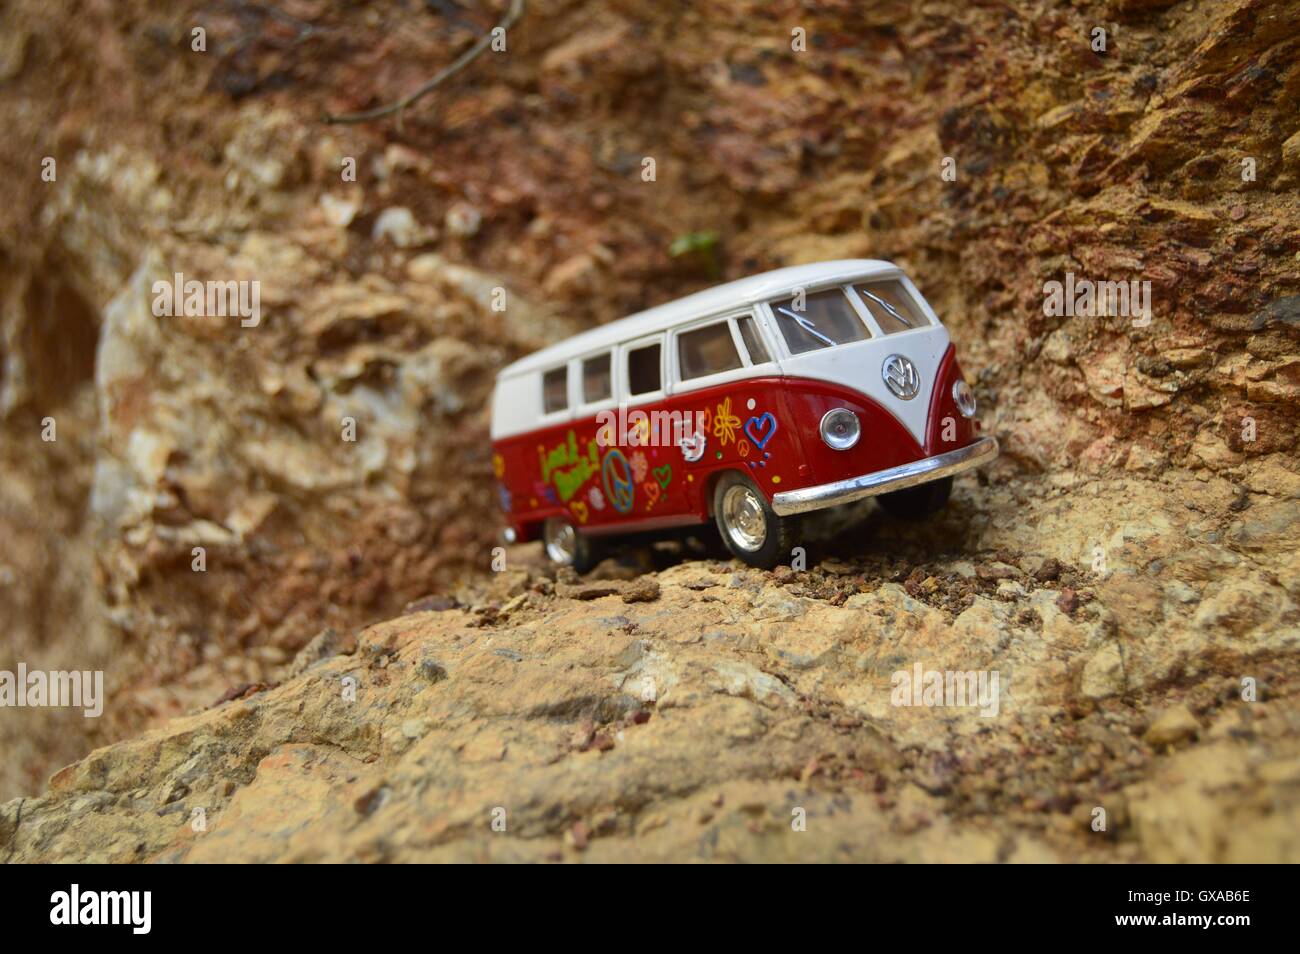 Classico Tedesco furgoni, giocattolo sul terreno roccioso. Il bianco e il rosso van nella nuda terra. Foto Stock